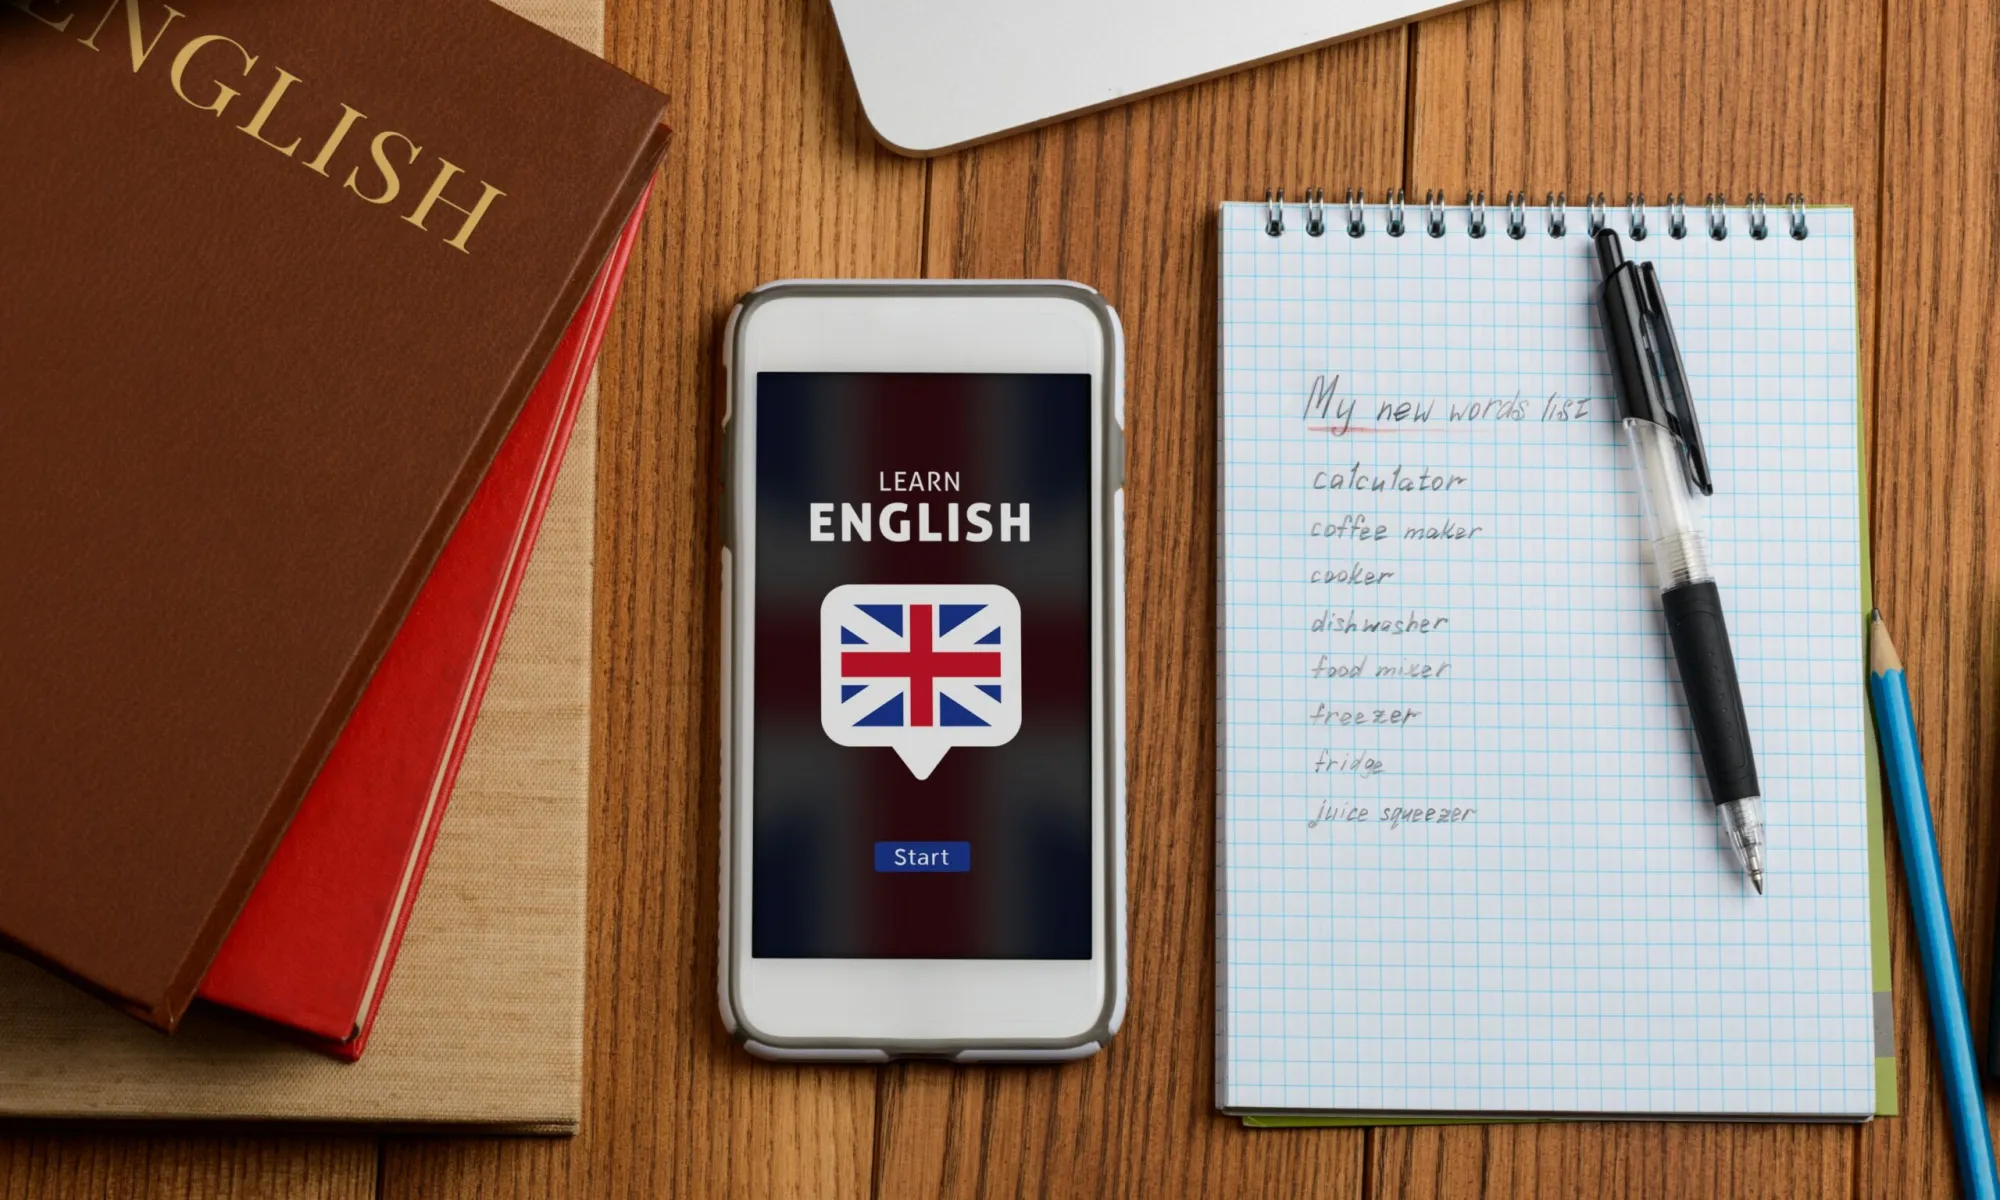 Il telefono mostra la bandiera inglese e accanto c'è un quaderno con un elenco scritto di parole inglesi.